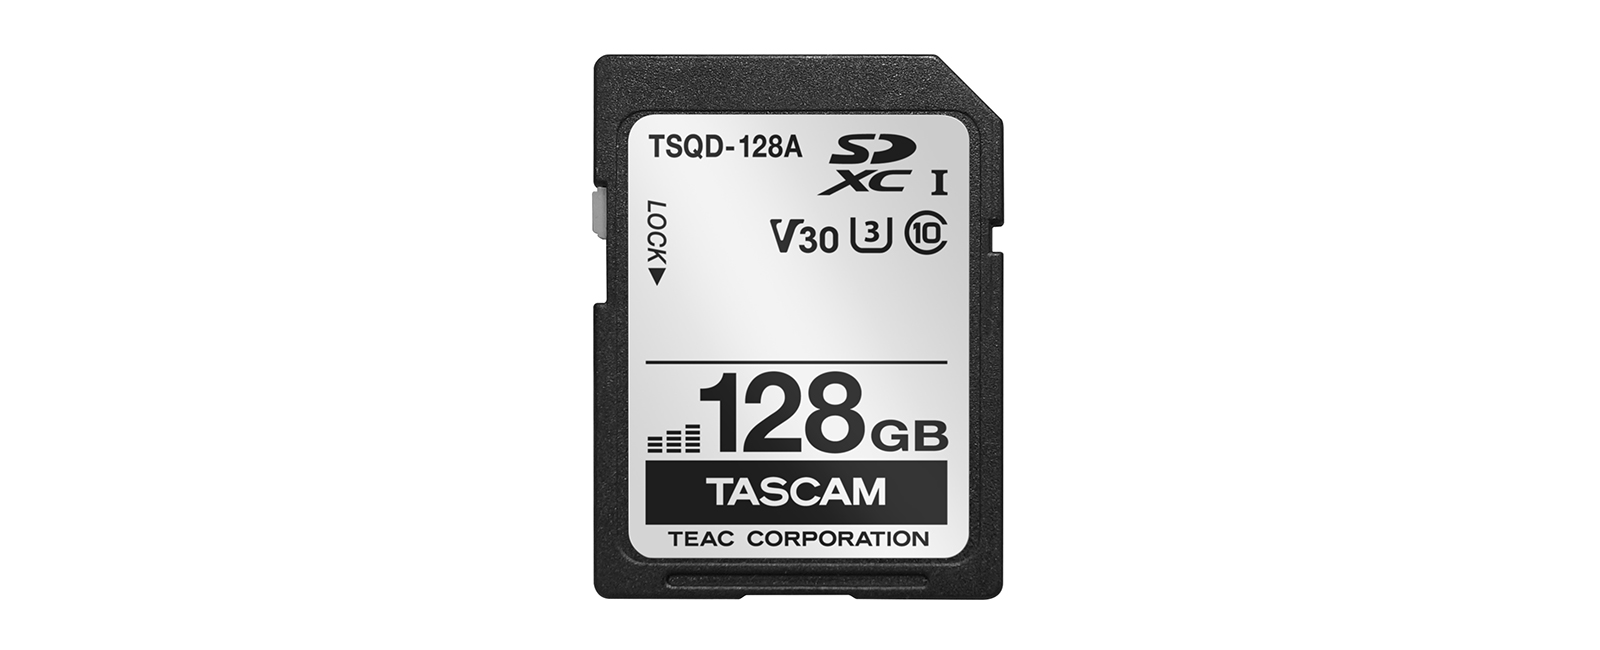 TASCAM anuncia la tarjeta TSQD-128A SDXC